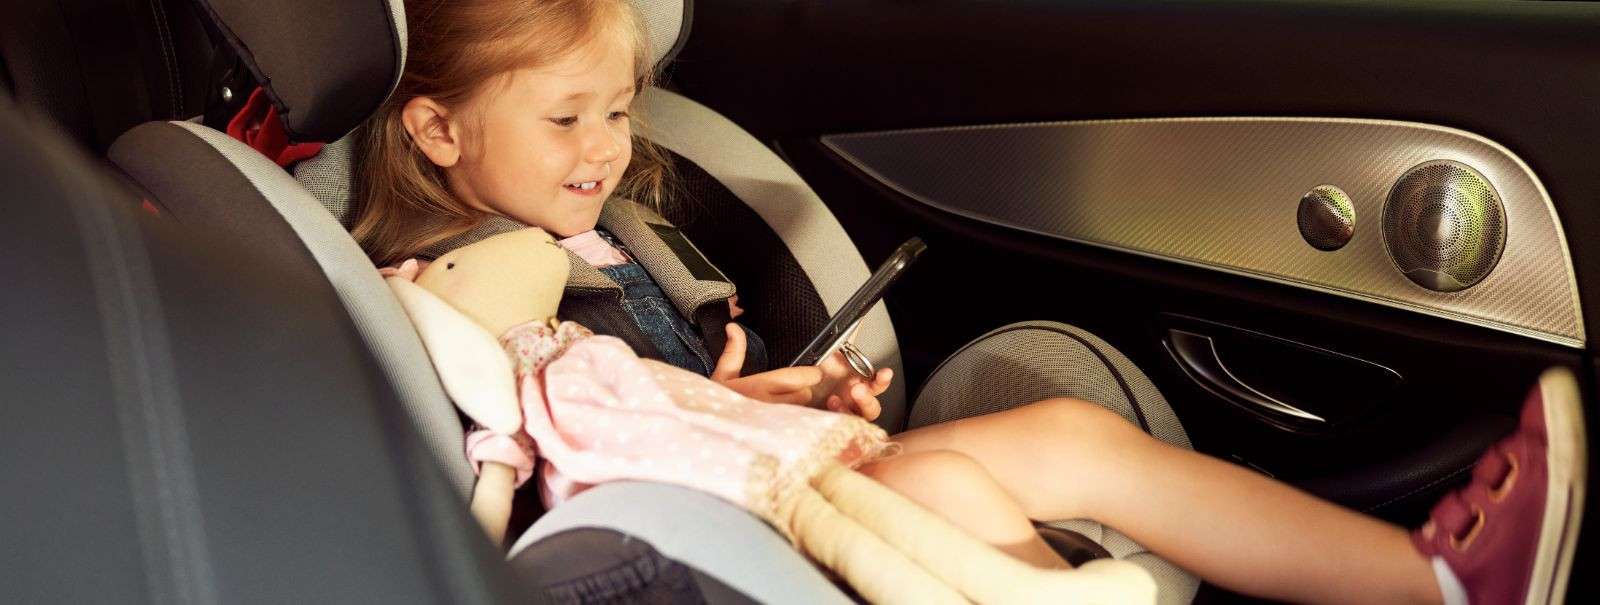 Tagamaks oma lapse ohutust igal autosõidul, on ülioluline. Autoistmed, kui need on õigesti paigaldatud ja kasutatud, võivad oluliselt vähendada imikute ja väike